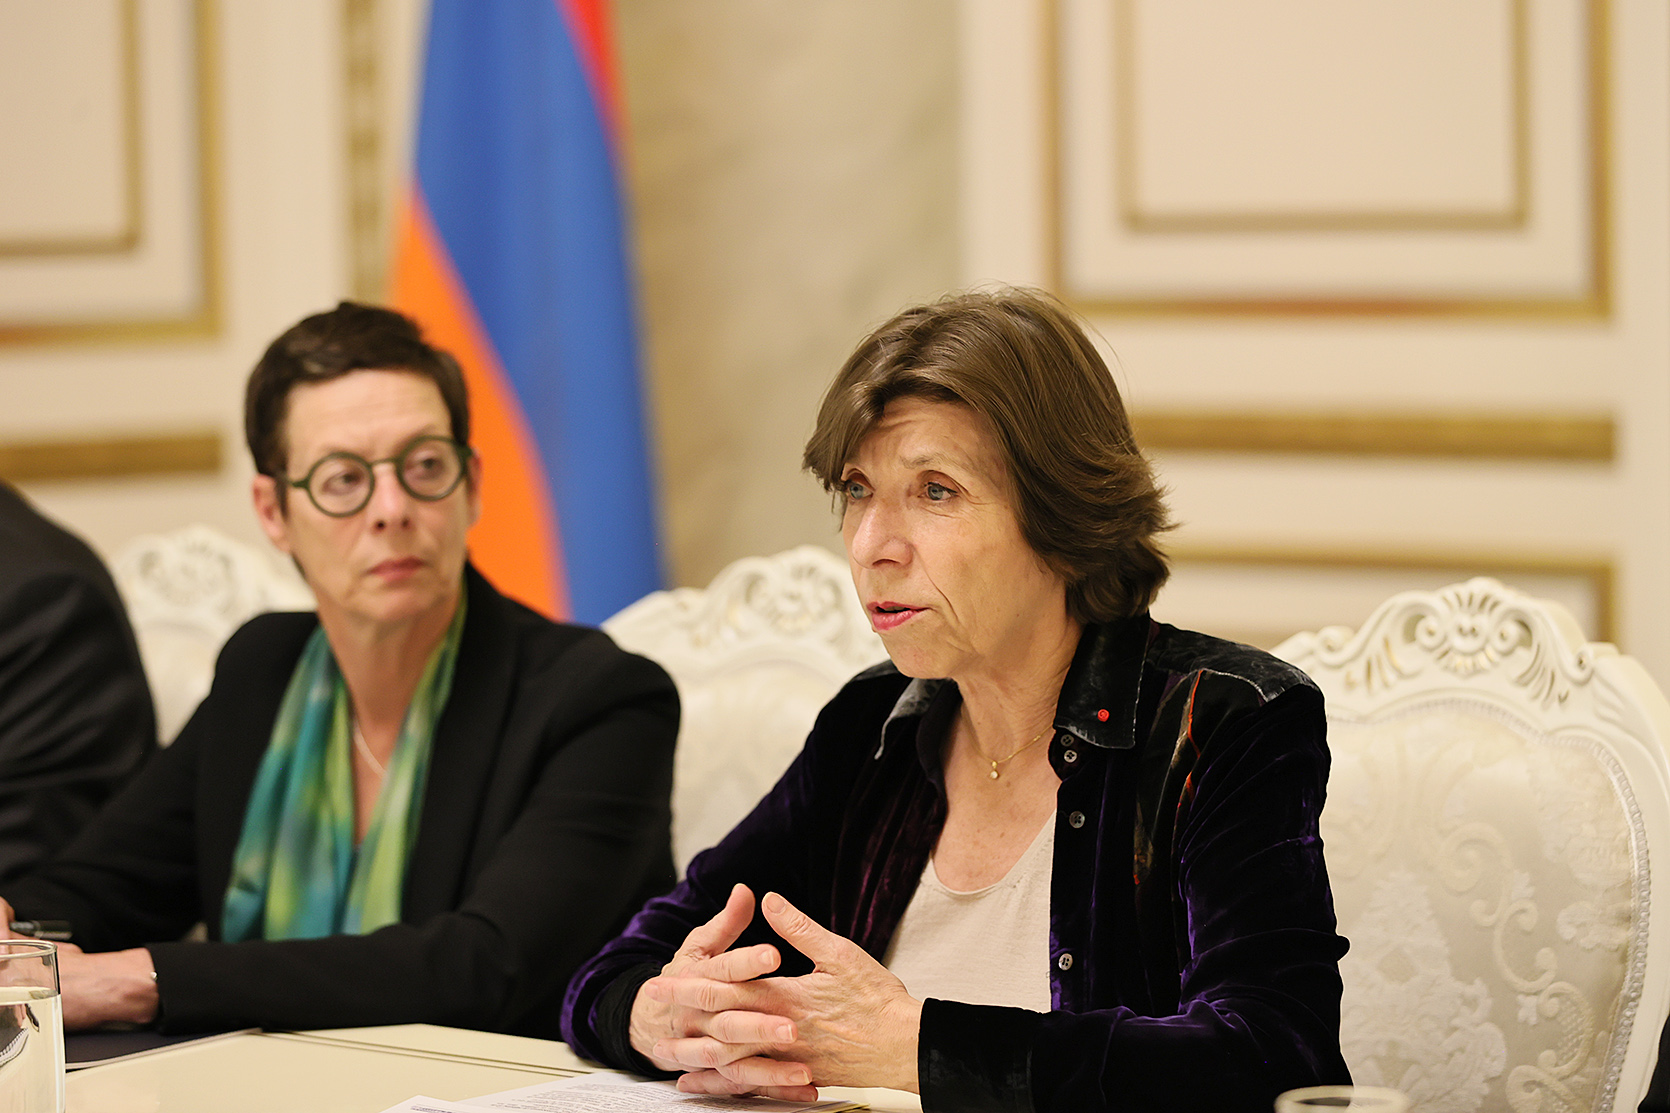 Заявления Франции создают иллюзии поддержки Армении по Карабаху